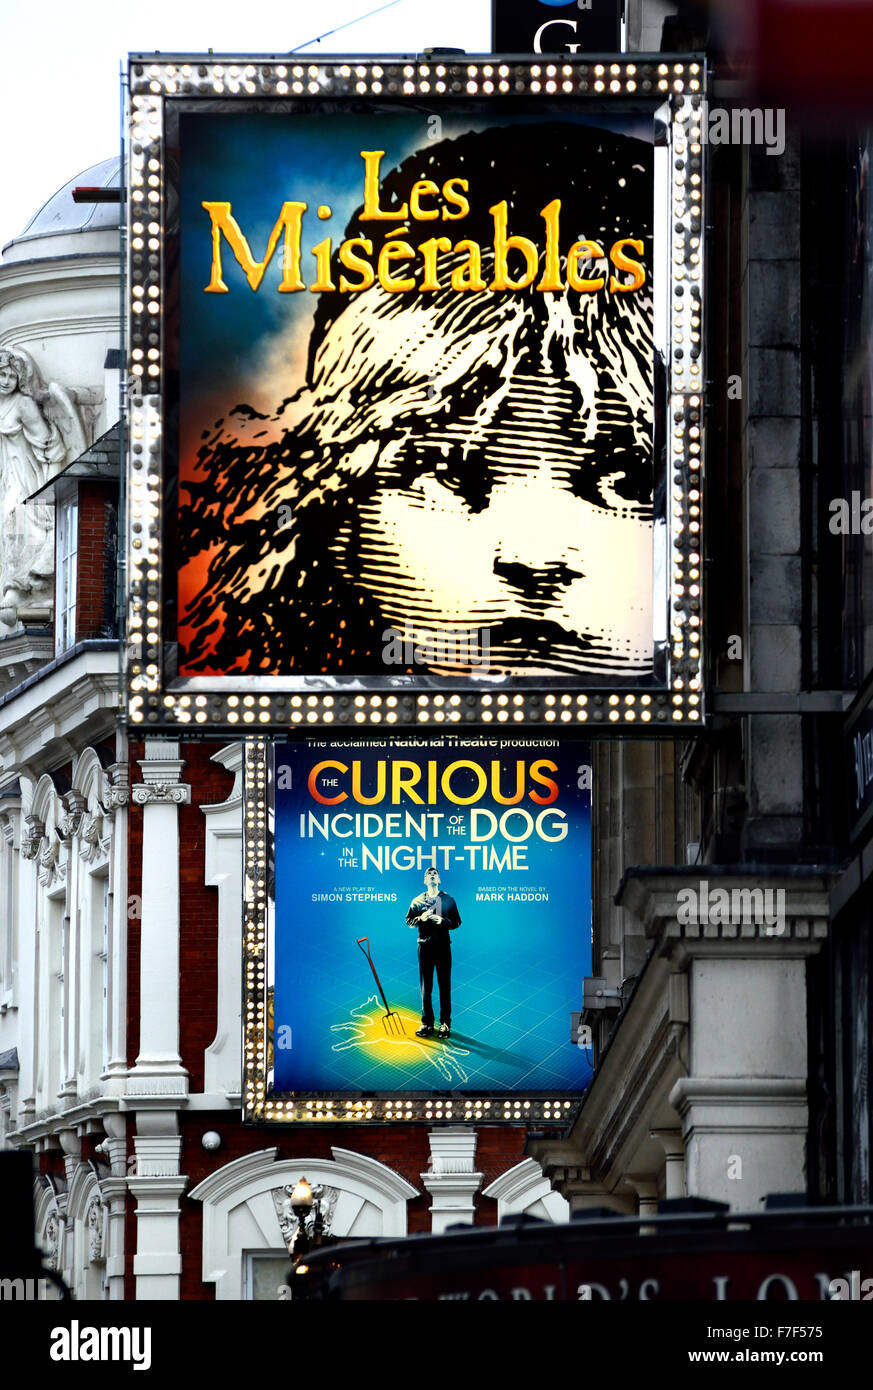 Londra, Inghilterra, Regno Unito. Teatri a Shaftesbury Avenue - Les Miserables e il curioso incidente del cane nella notte Foto Stock